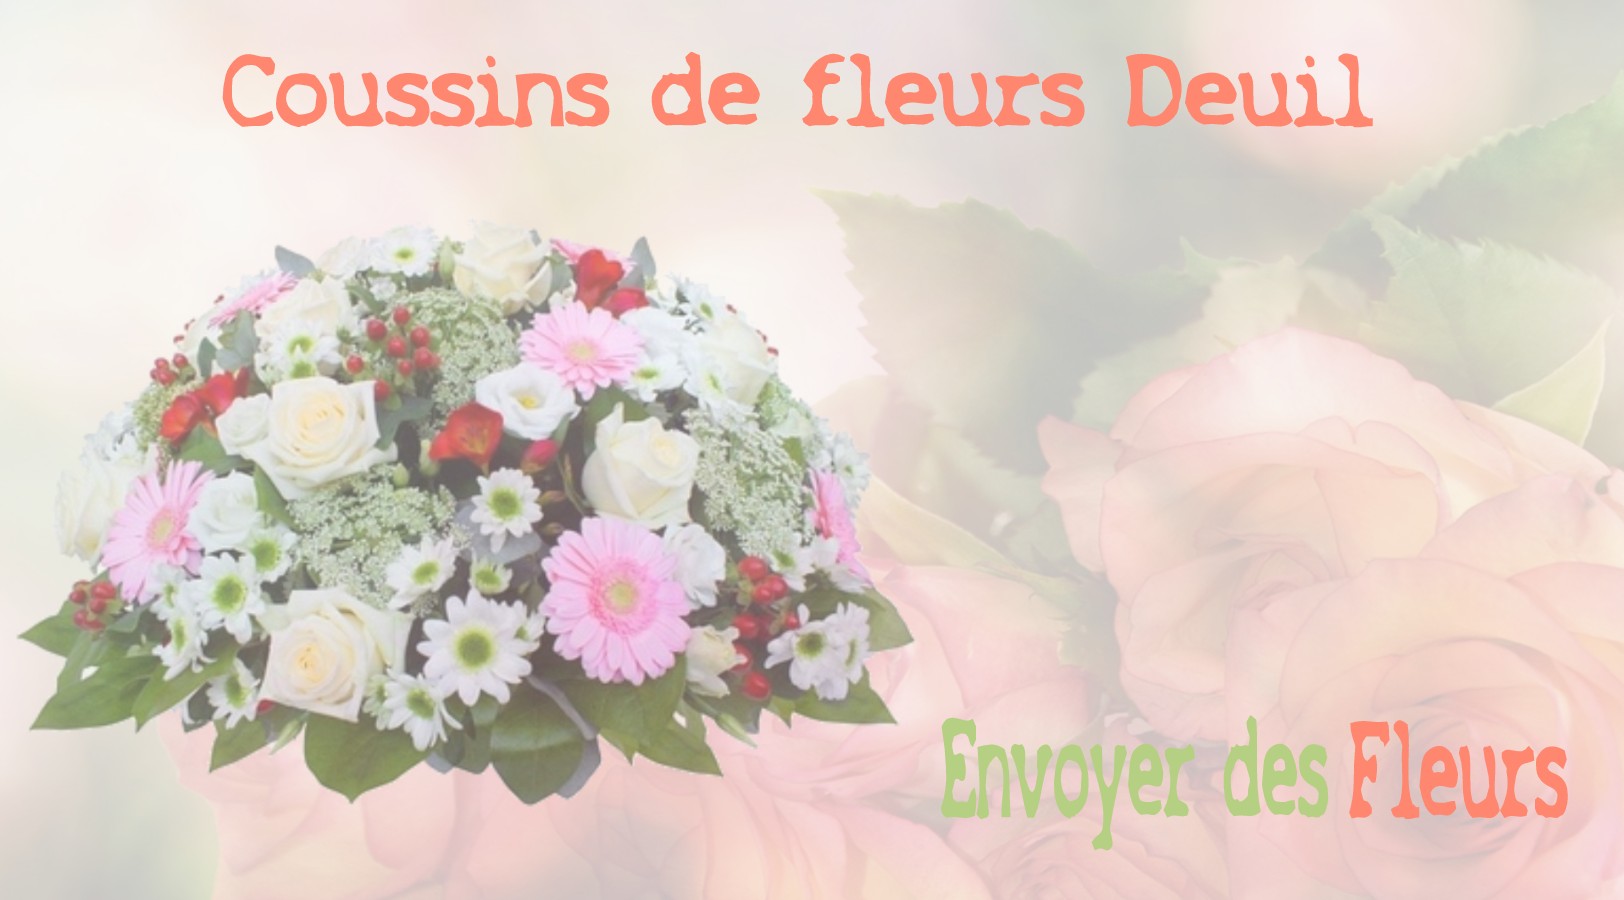 Les coussins de fleurs deuil - LIVRAISON FLEURS DEUIL A MONTALET-LE-BOIS 78